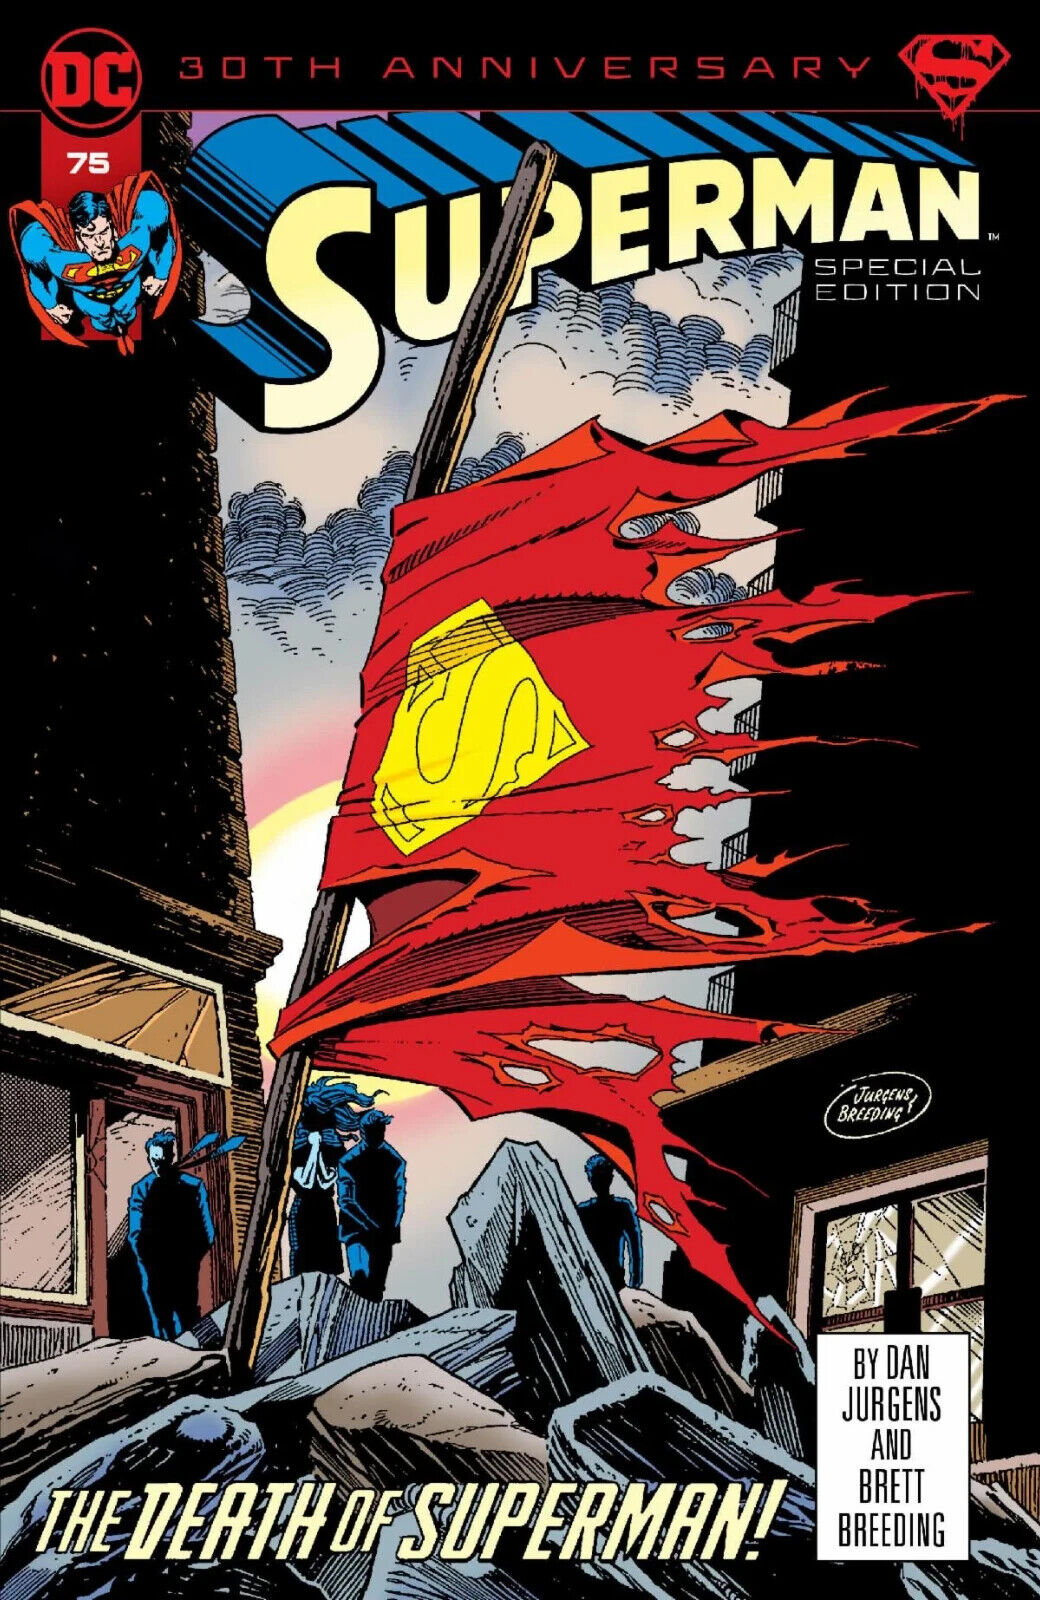 Death Of Superman 11x17 POSTER DCU DC Comics Batman Clark Kent Justice League